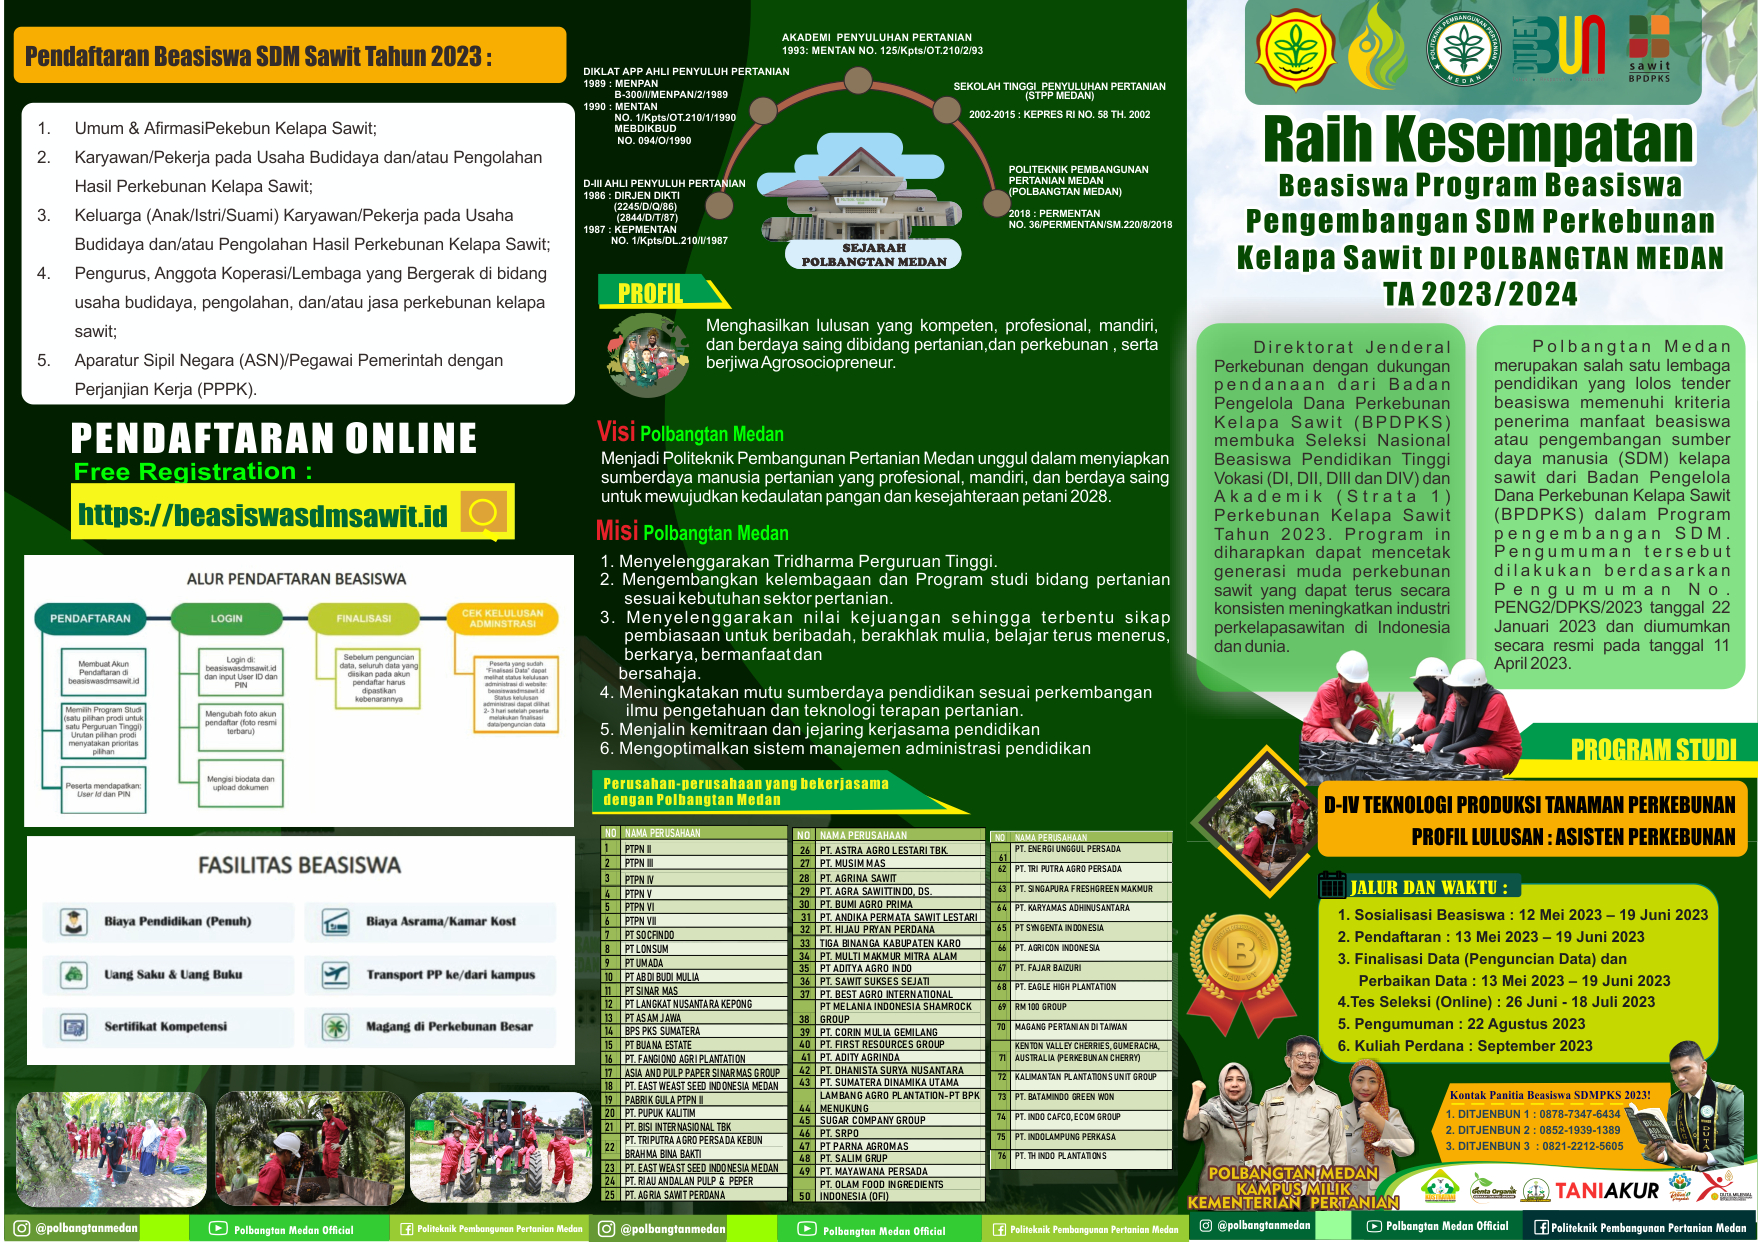 Raih Kesempatan Beasiswa Program Pengembangan SDM dari Badan Pengelola Dana Perkebunan Kelapa Sawit (BPDPKS) di Polbangtan Medan